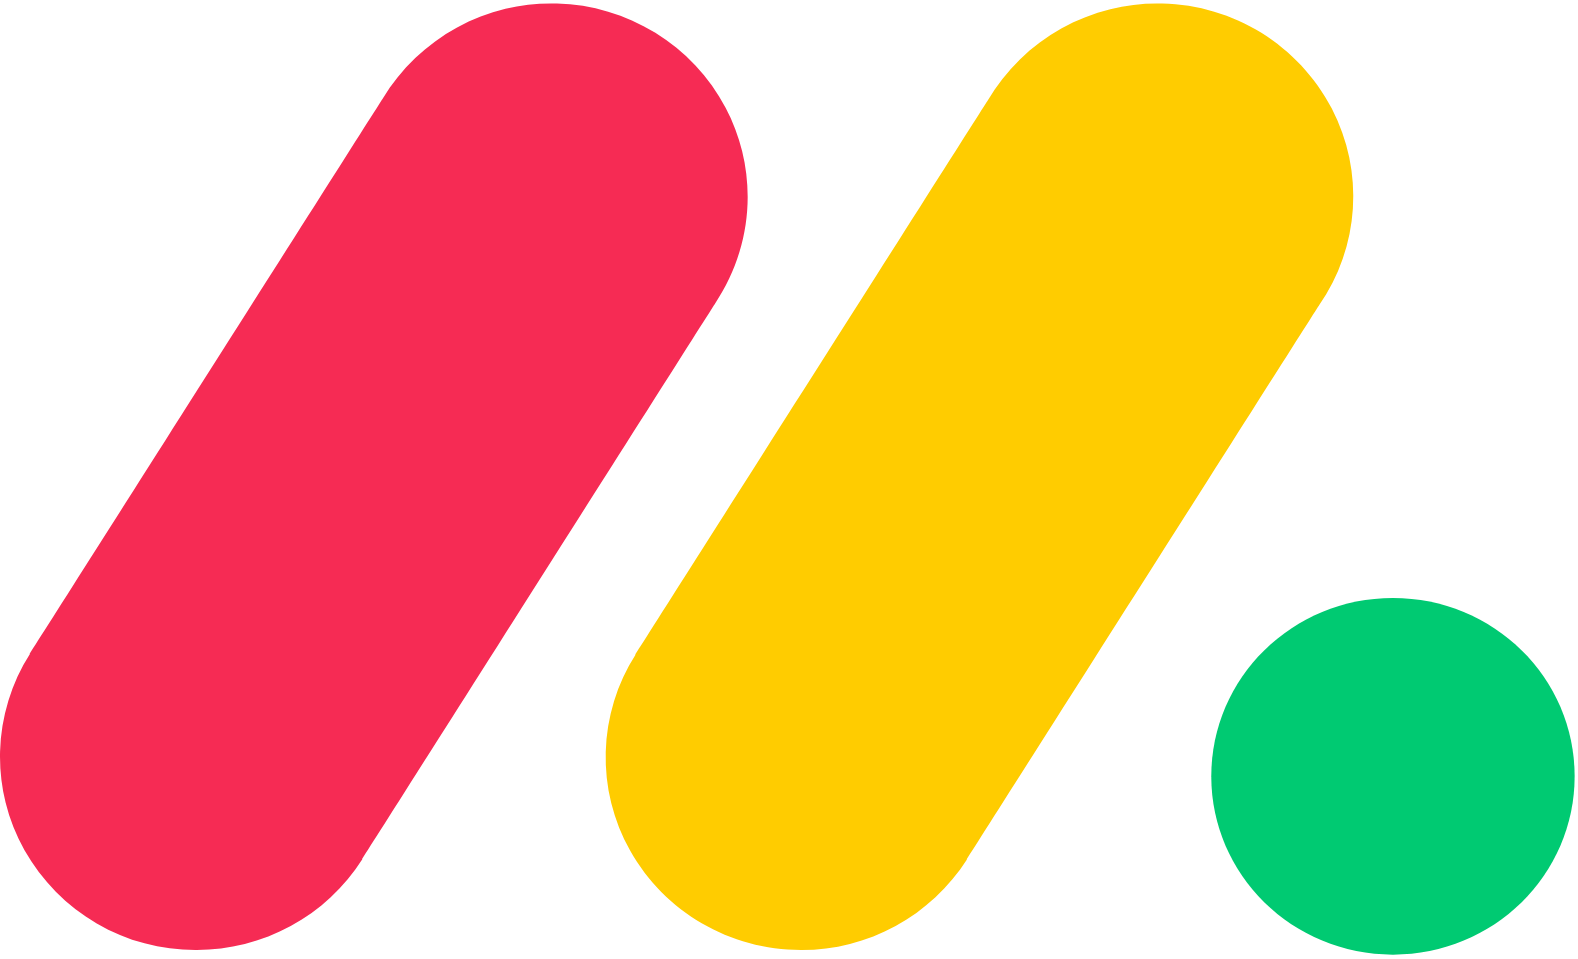 monday.com logo (PNG transparent)